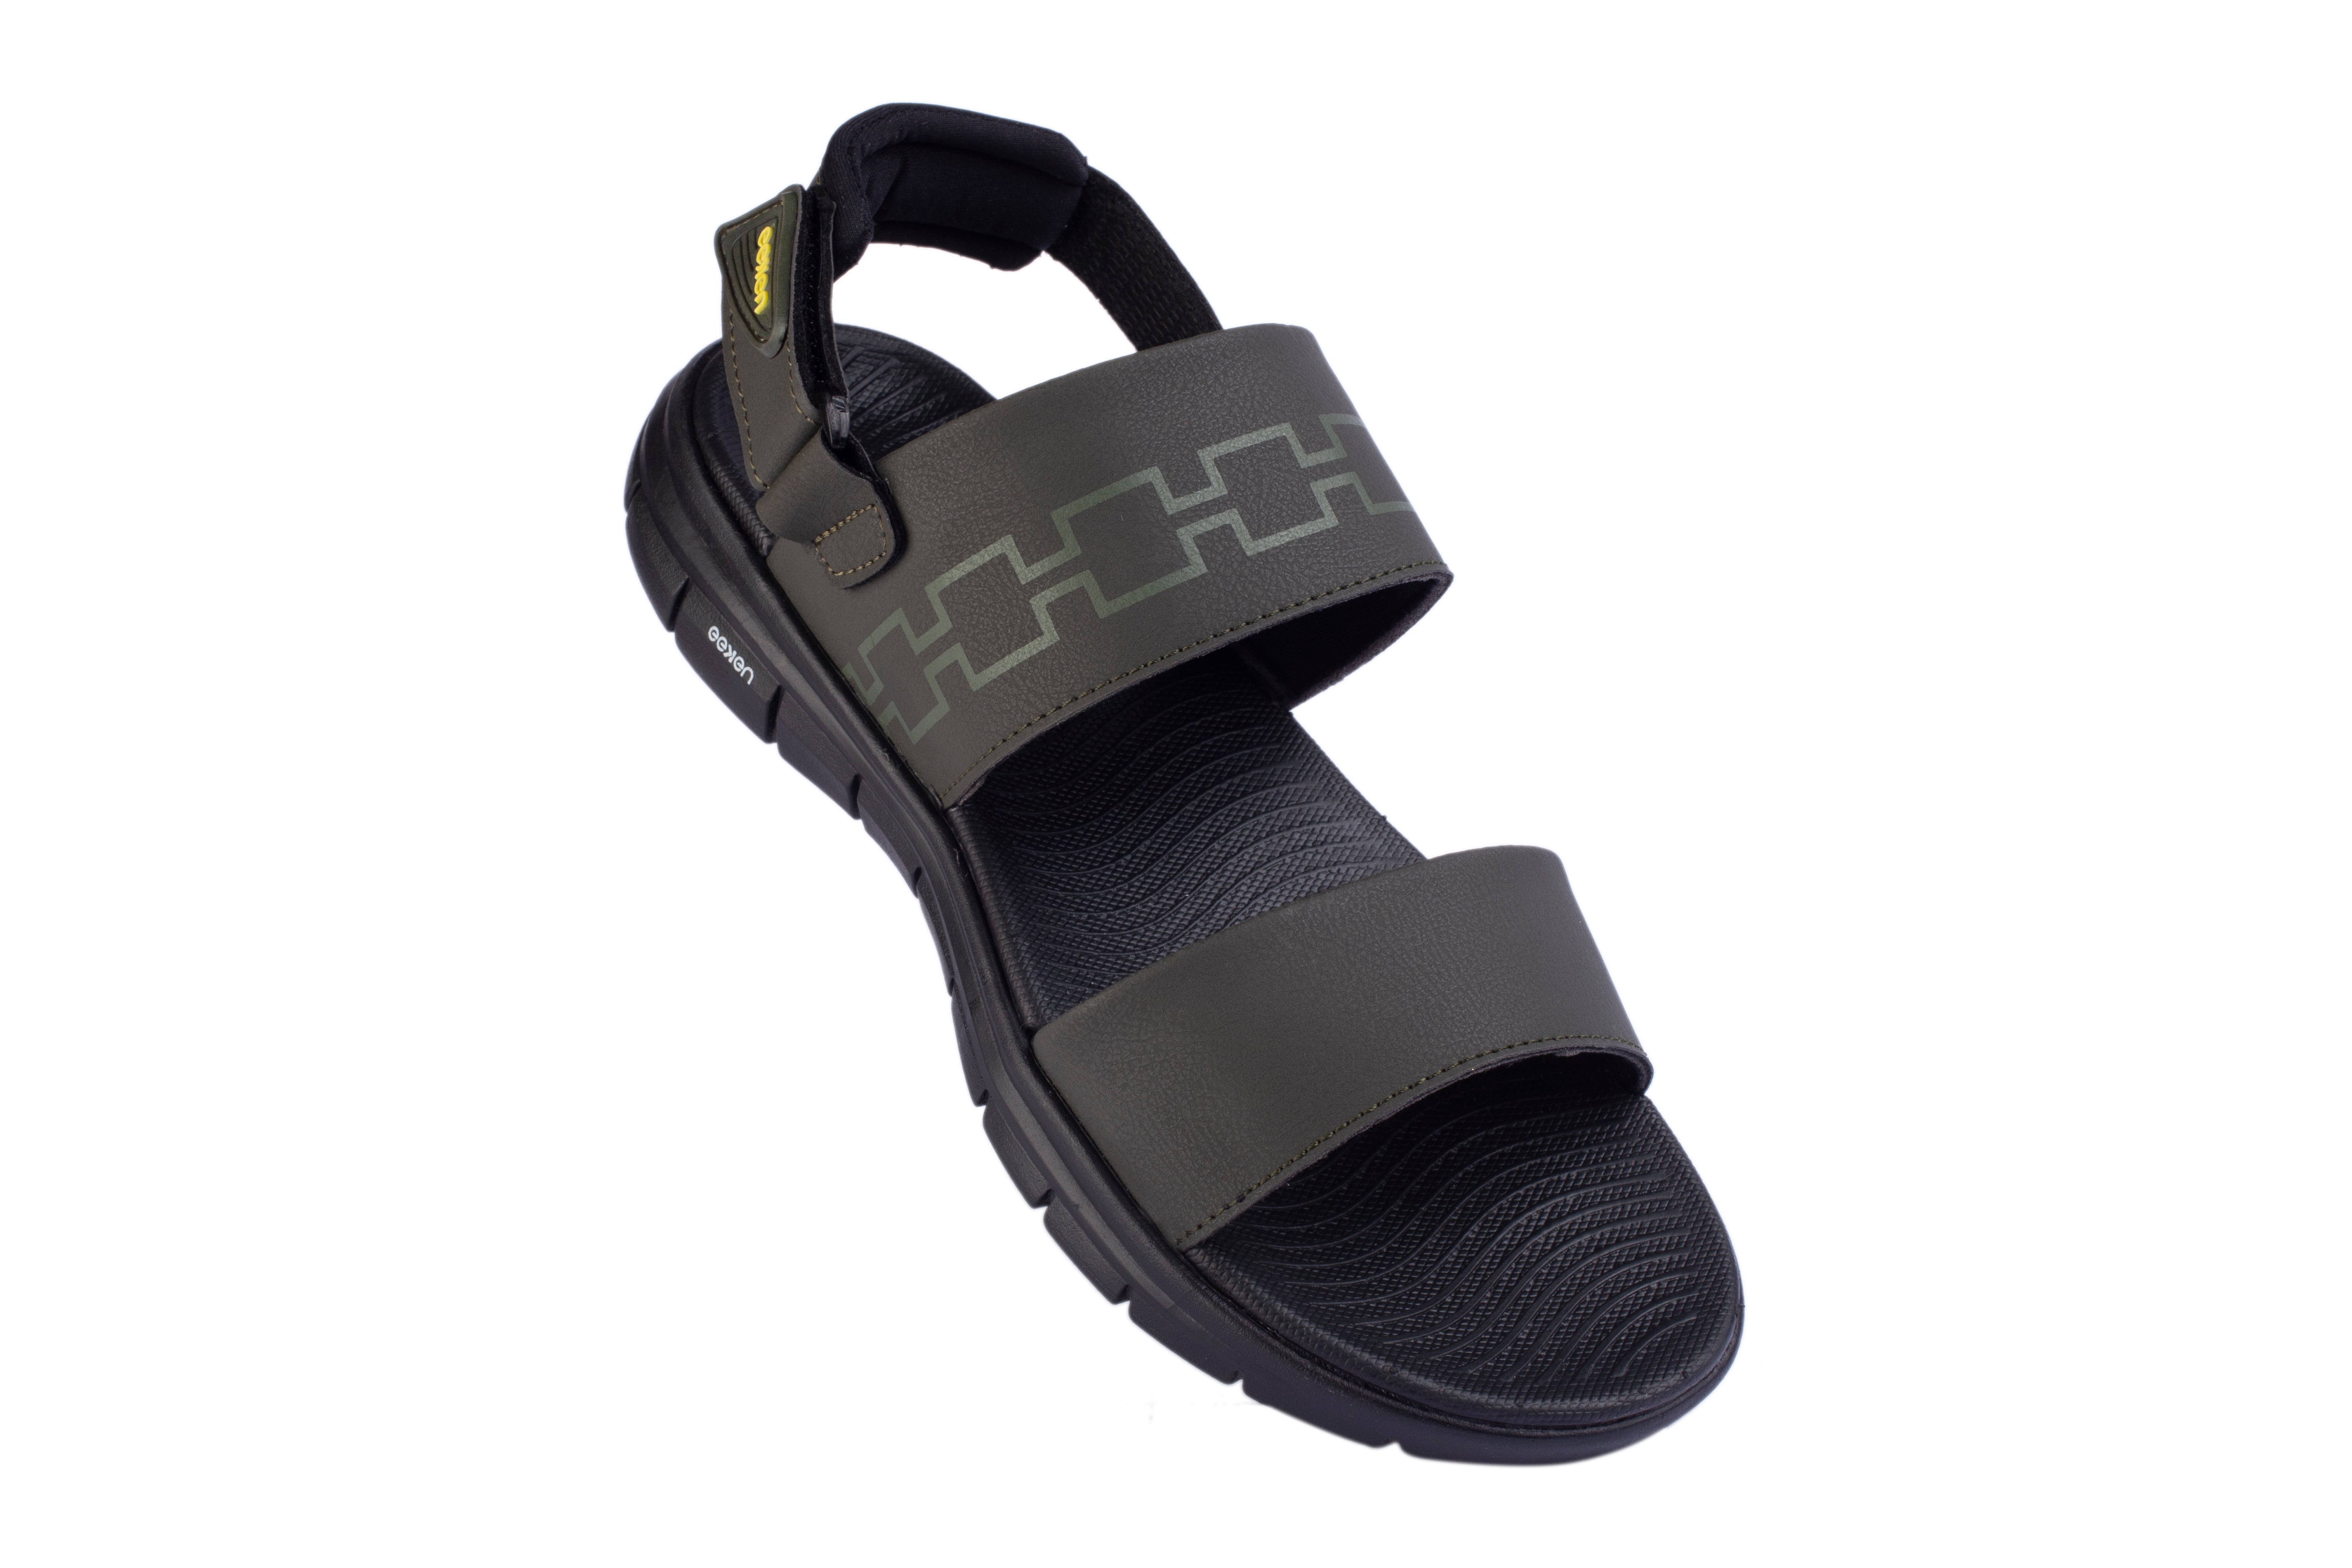 Eeken Lightweight Anti-Skid Olive Outdoor Sandals For Men